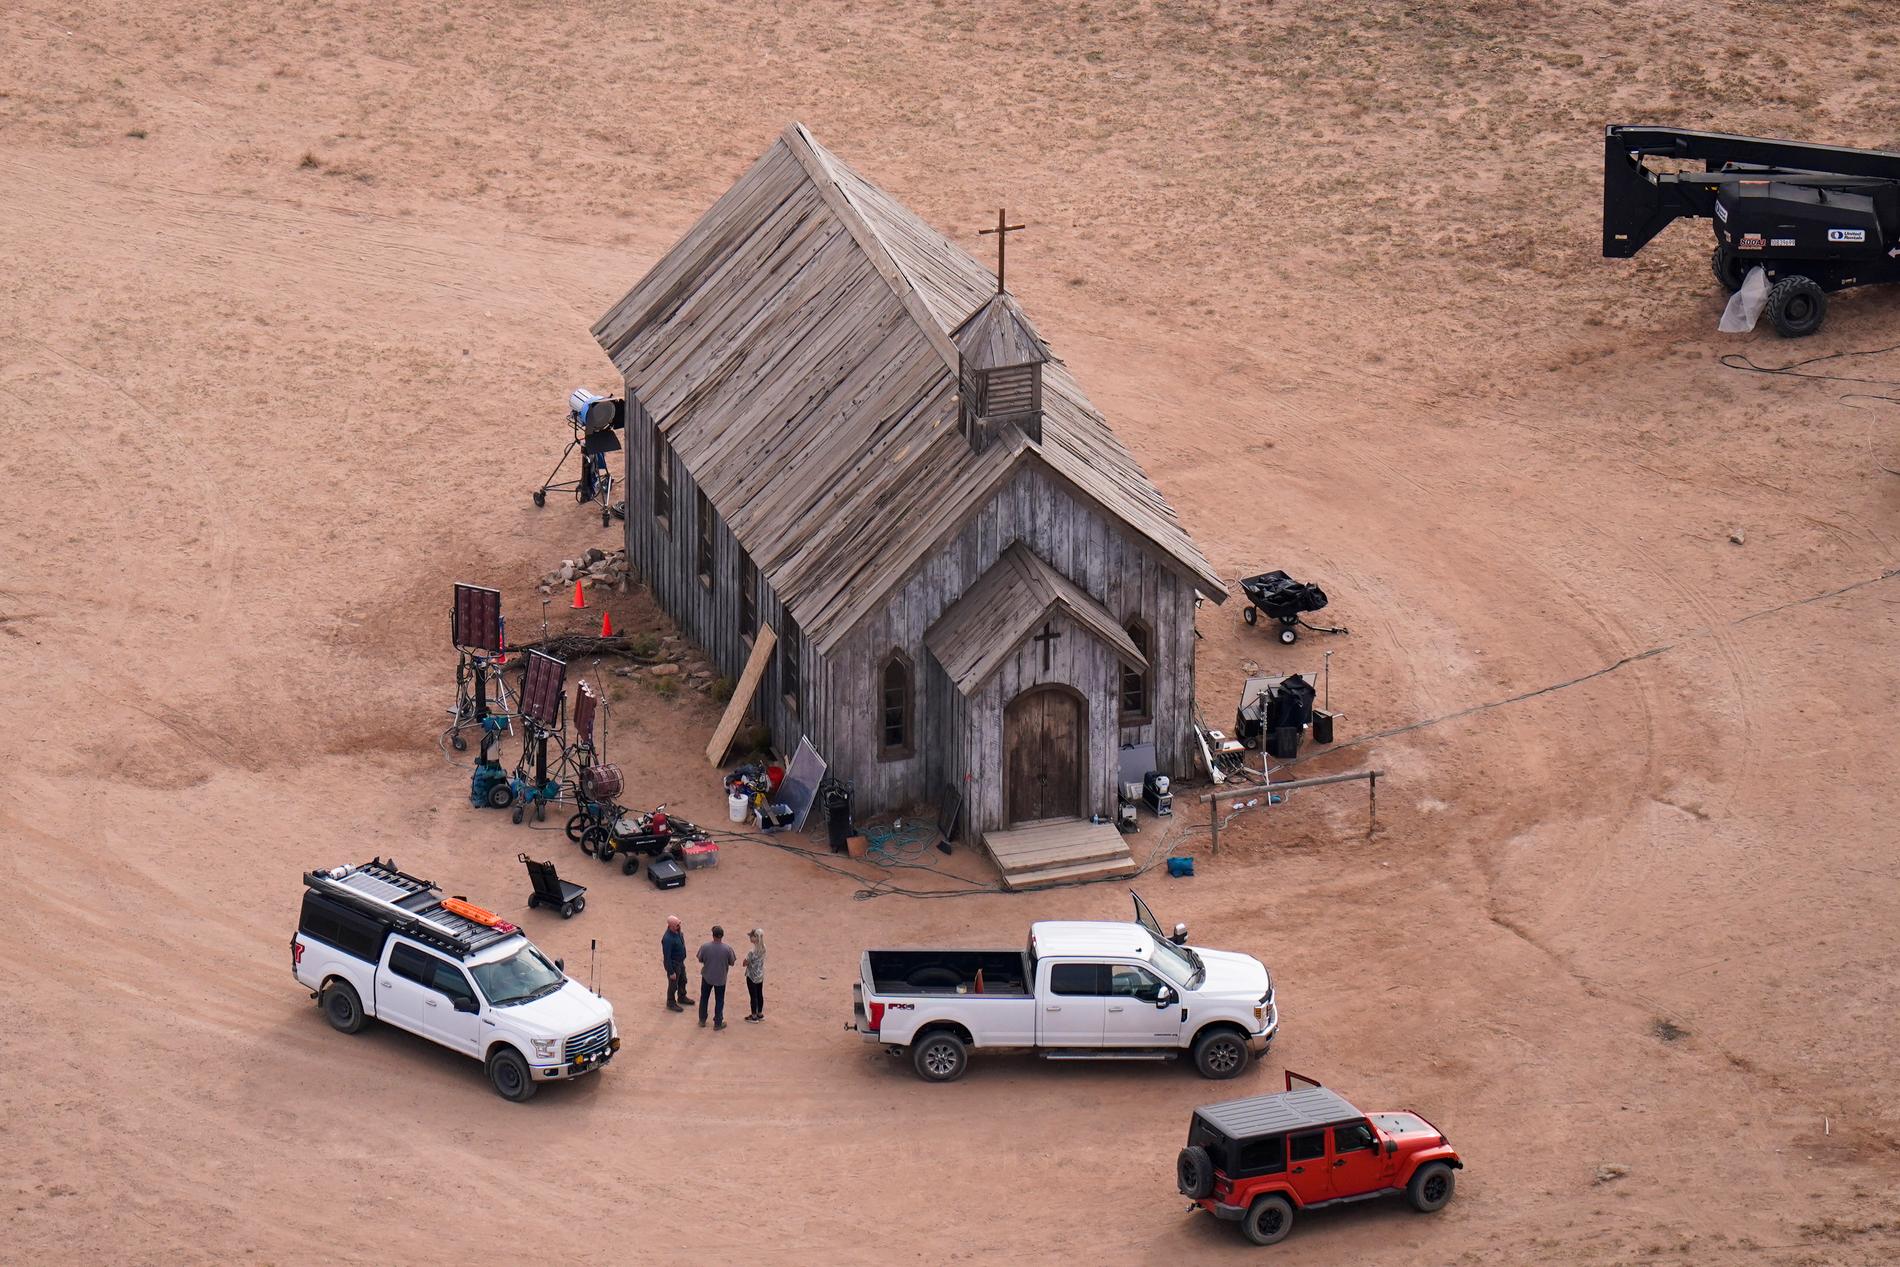 Bonanza Creek Ranch in Santa Fe, där fotografen Halyna Hutchins sköts i en olyckshändelse under inspelningen av filmen "Rust". Arkivbild.